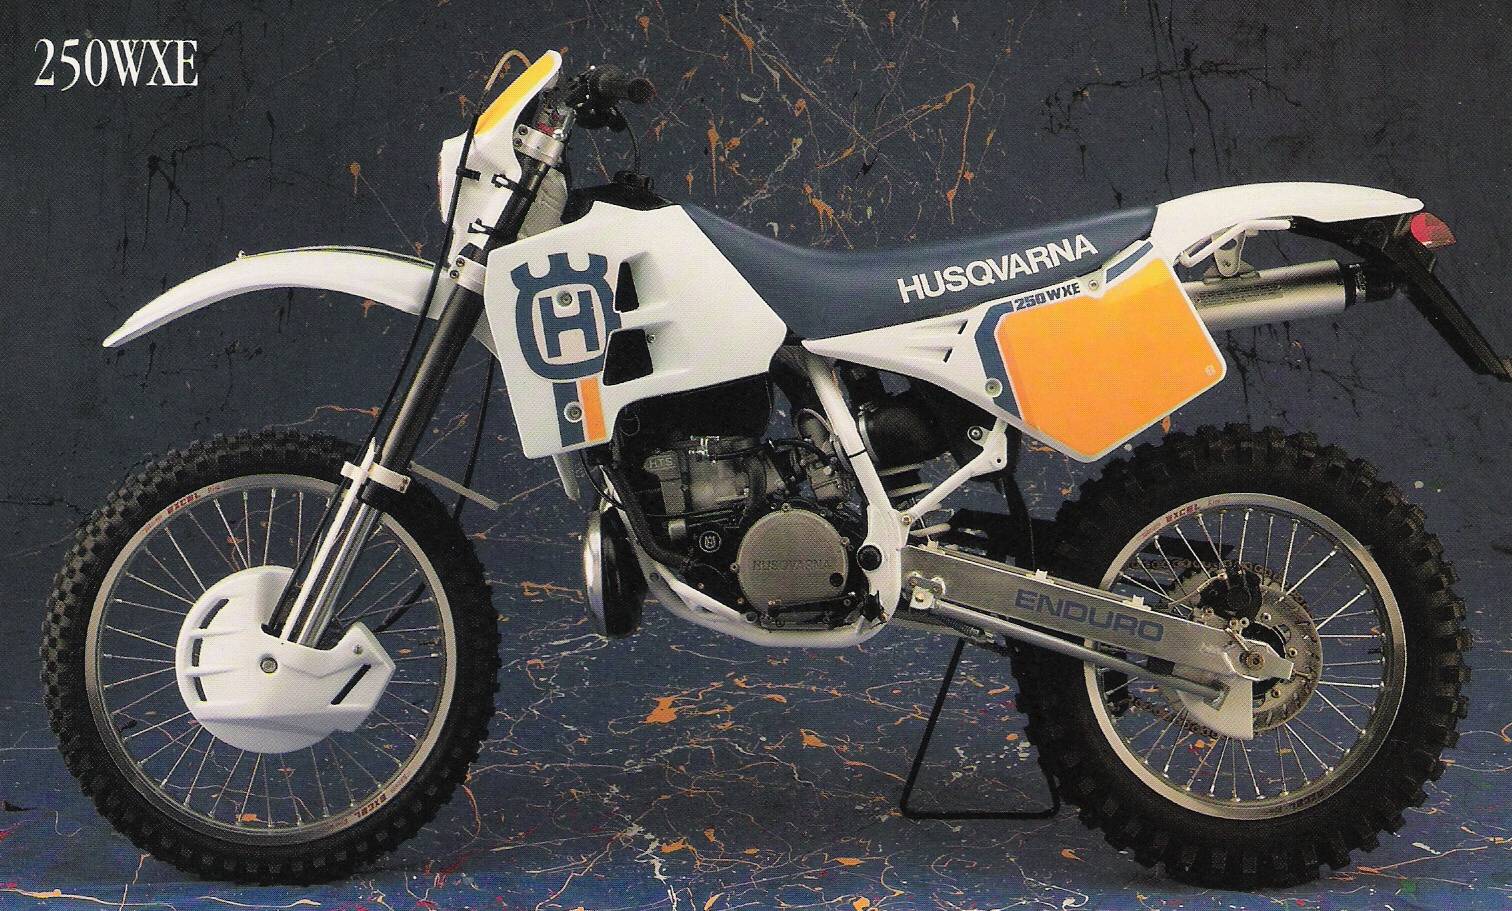 Мотоцикл husqvarna wr 360 1988 фото, характеристики, обзор, сравнение на базамото